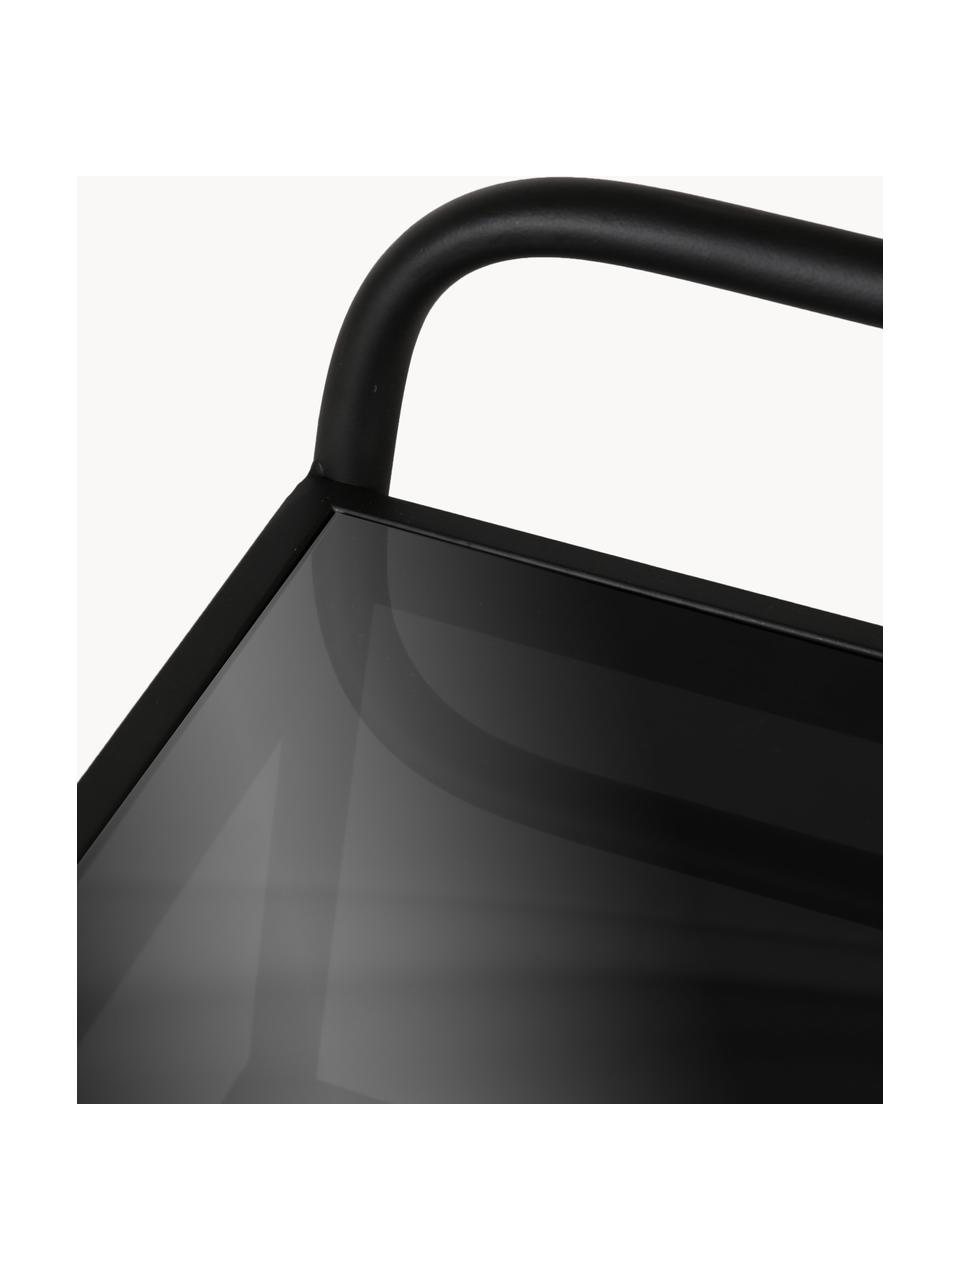 Wózek barowy z metalu ze szklanym blatem Markus, Nogi: metal malowany proszkowo, Czarny, S 58 x W 83 cm